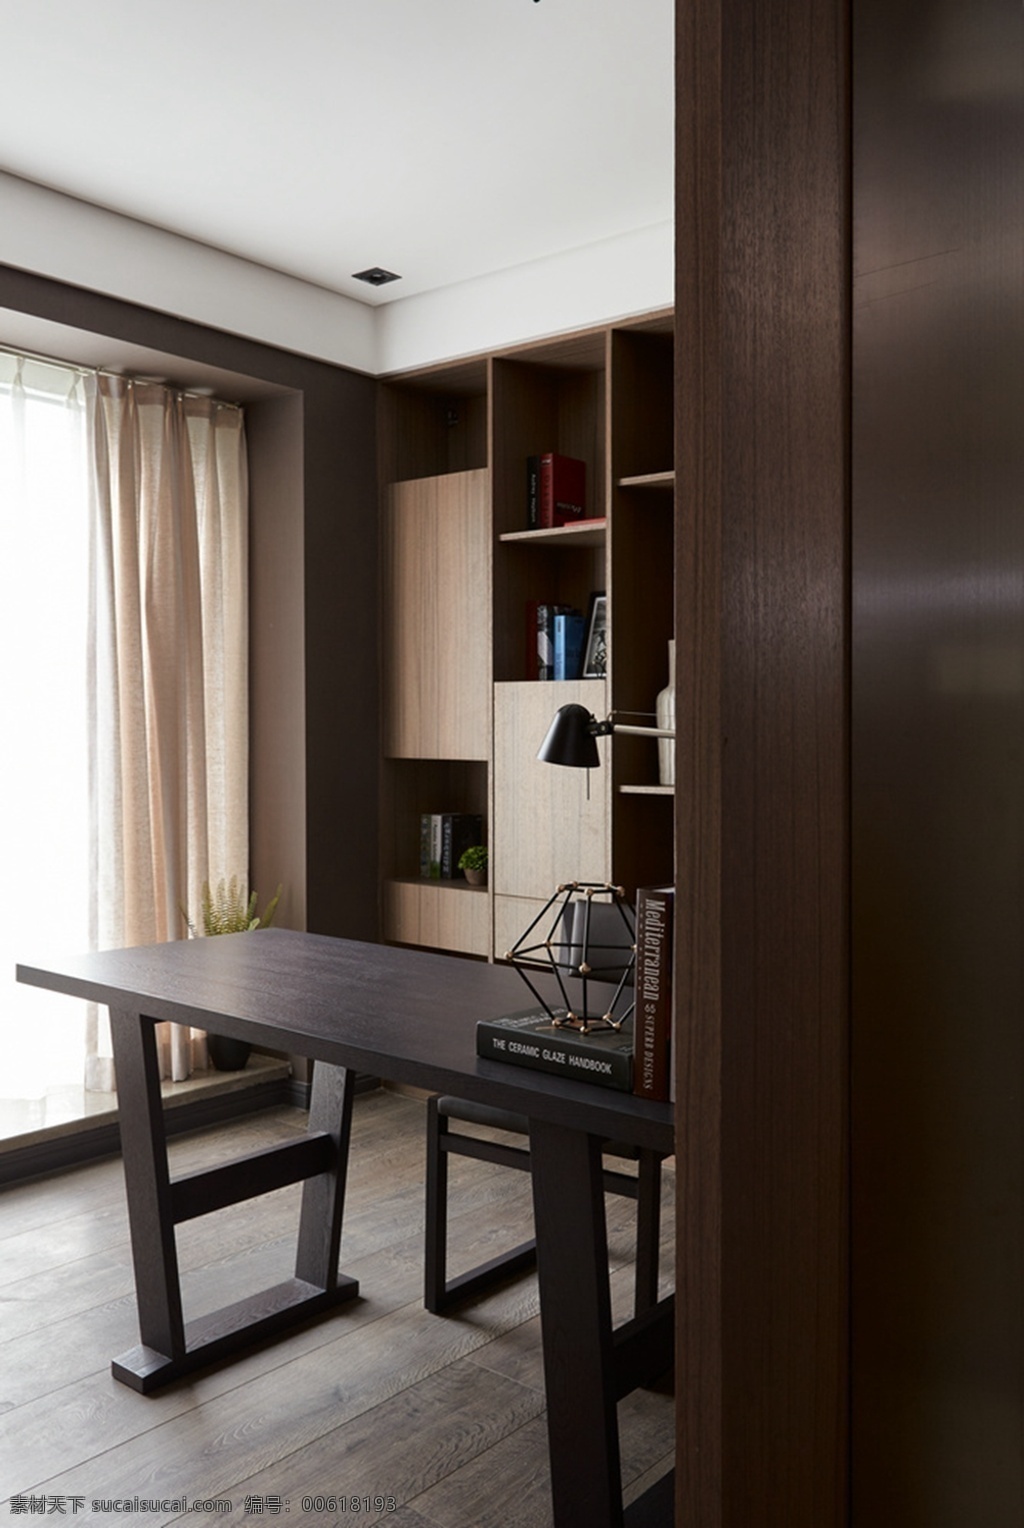 中式 雅致 客厅 木制 展示 书架 室内装修 效果图 客厅装修 木地板 木制书架 深色书桌